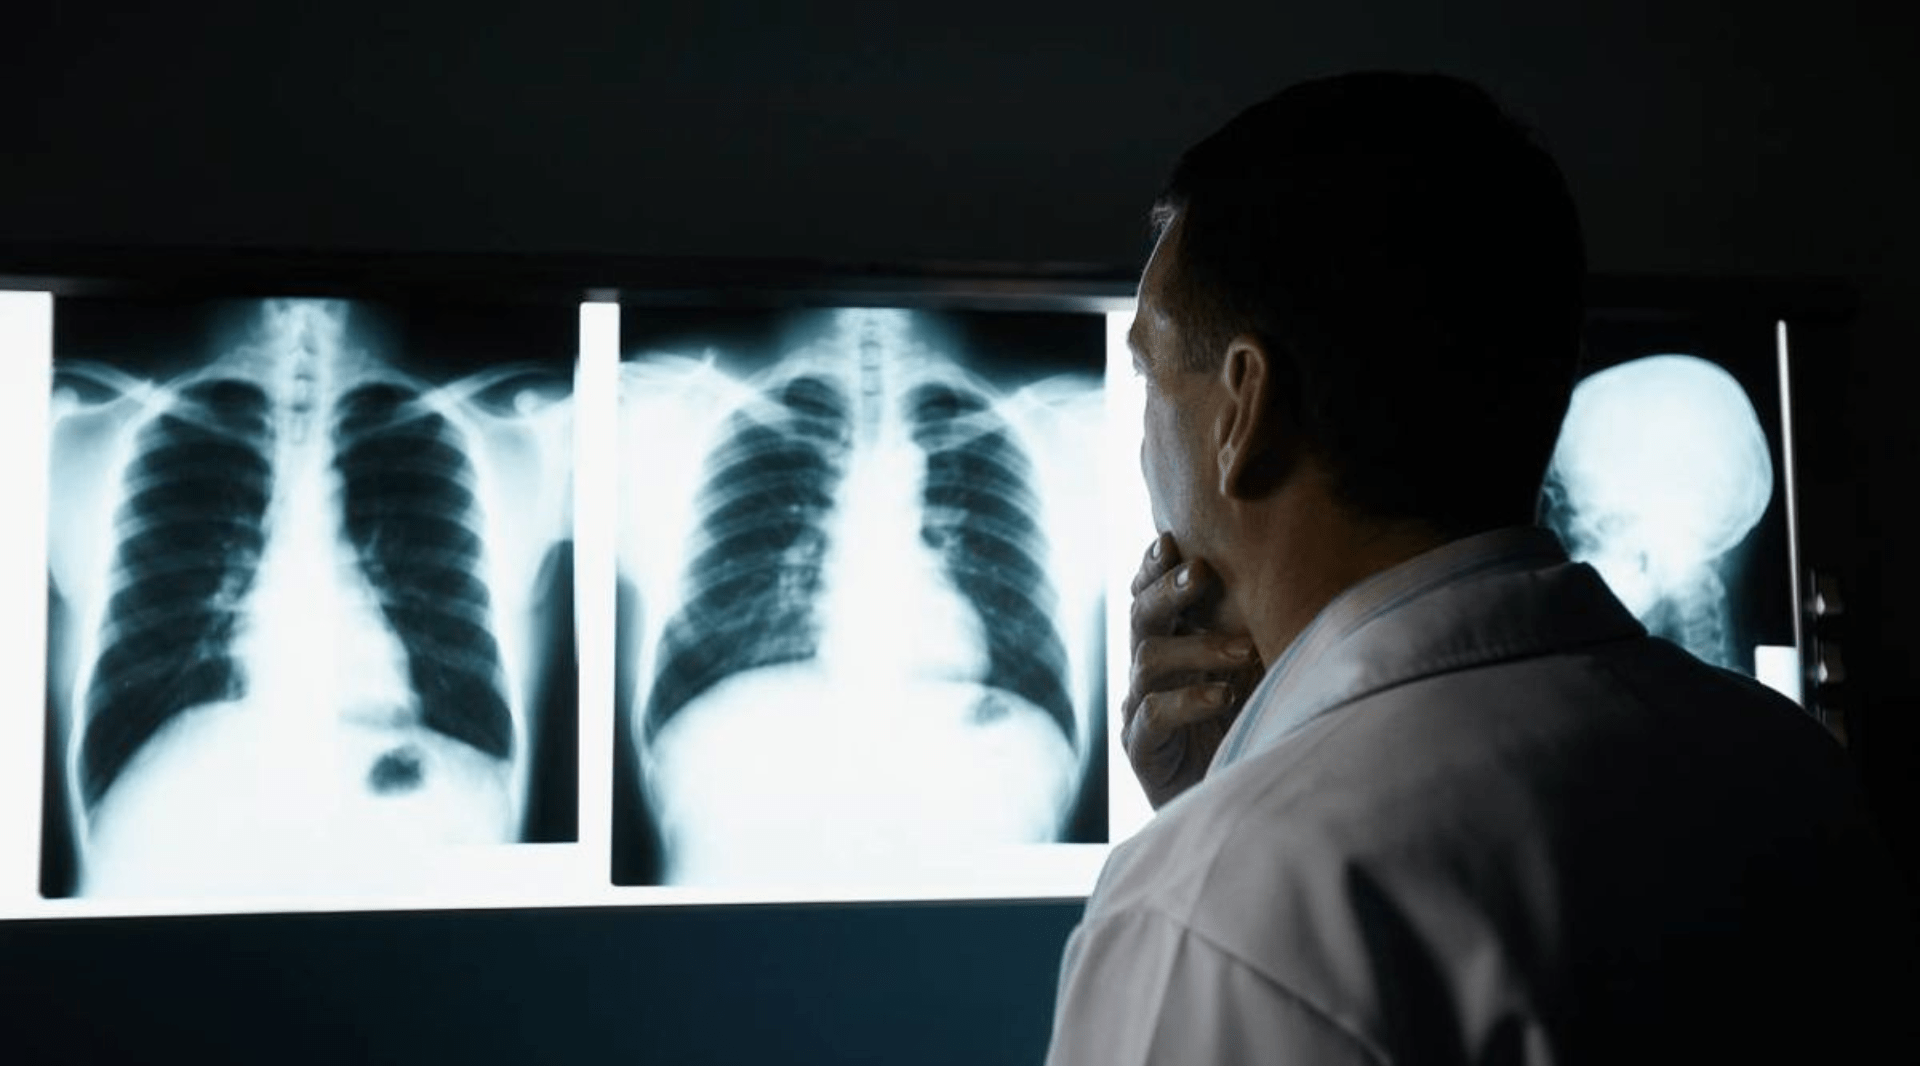 6 dicas para o profissional de radiologia otimizar a sua rotina de trabalho